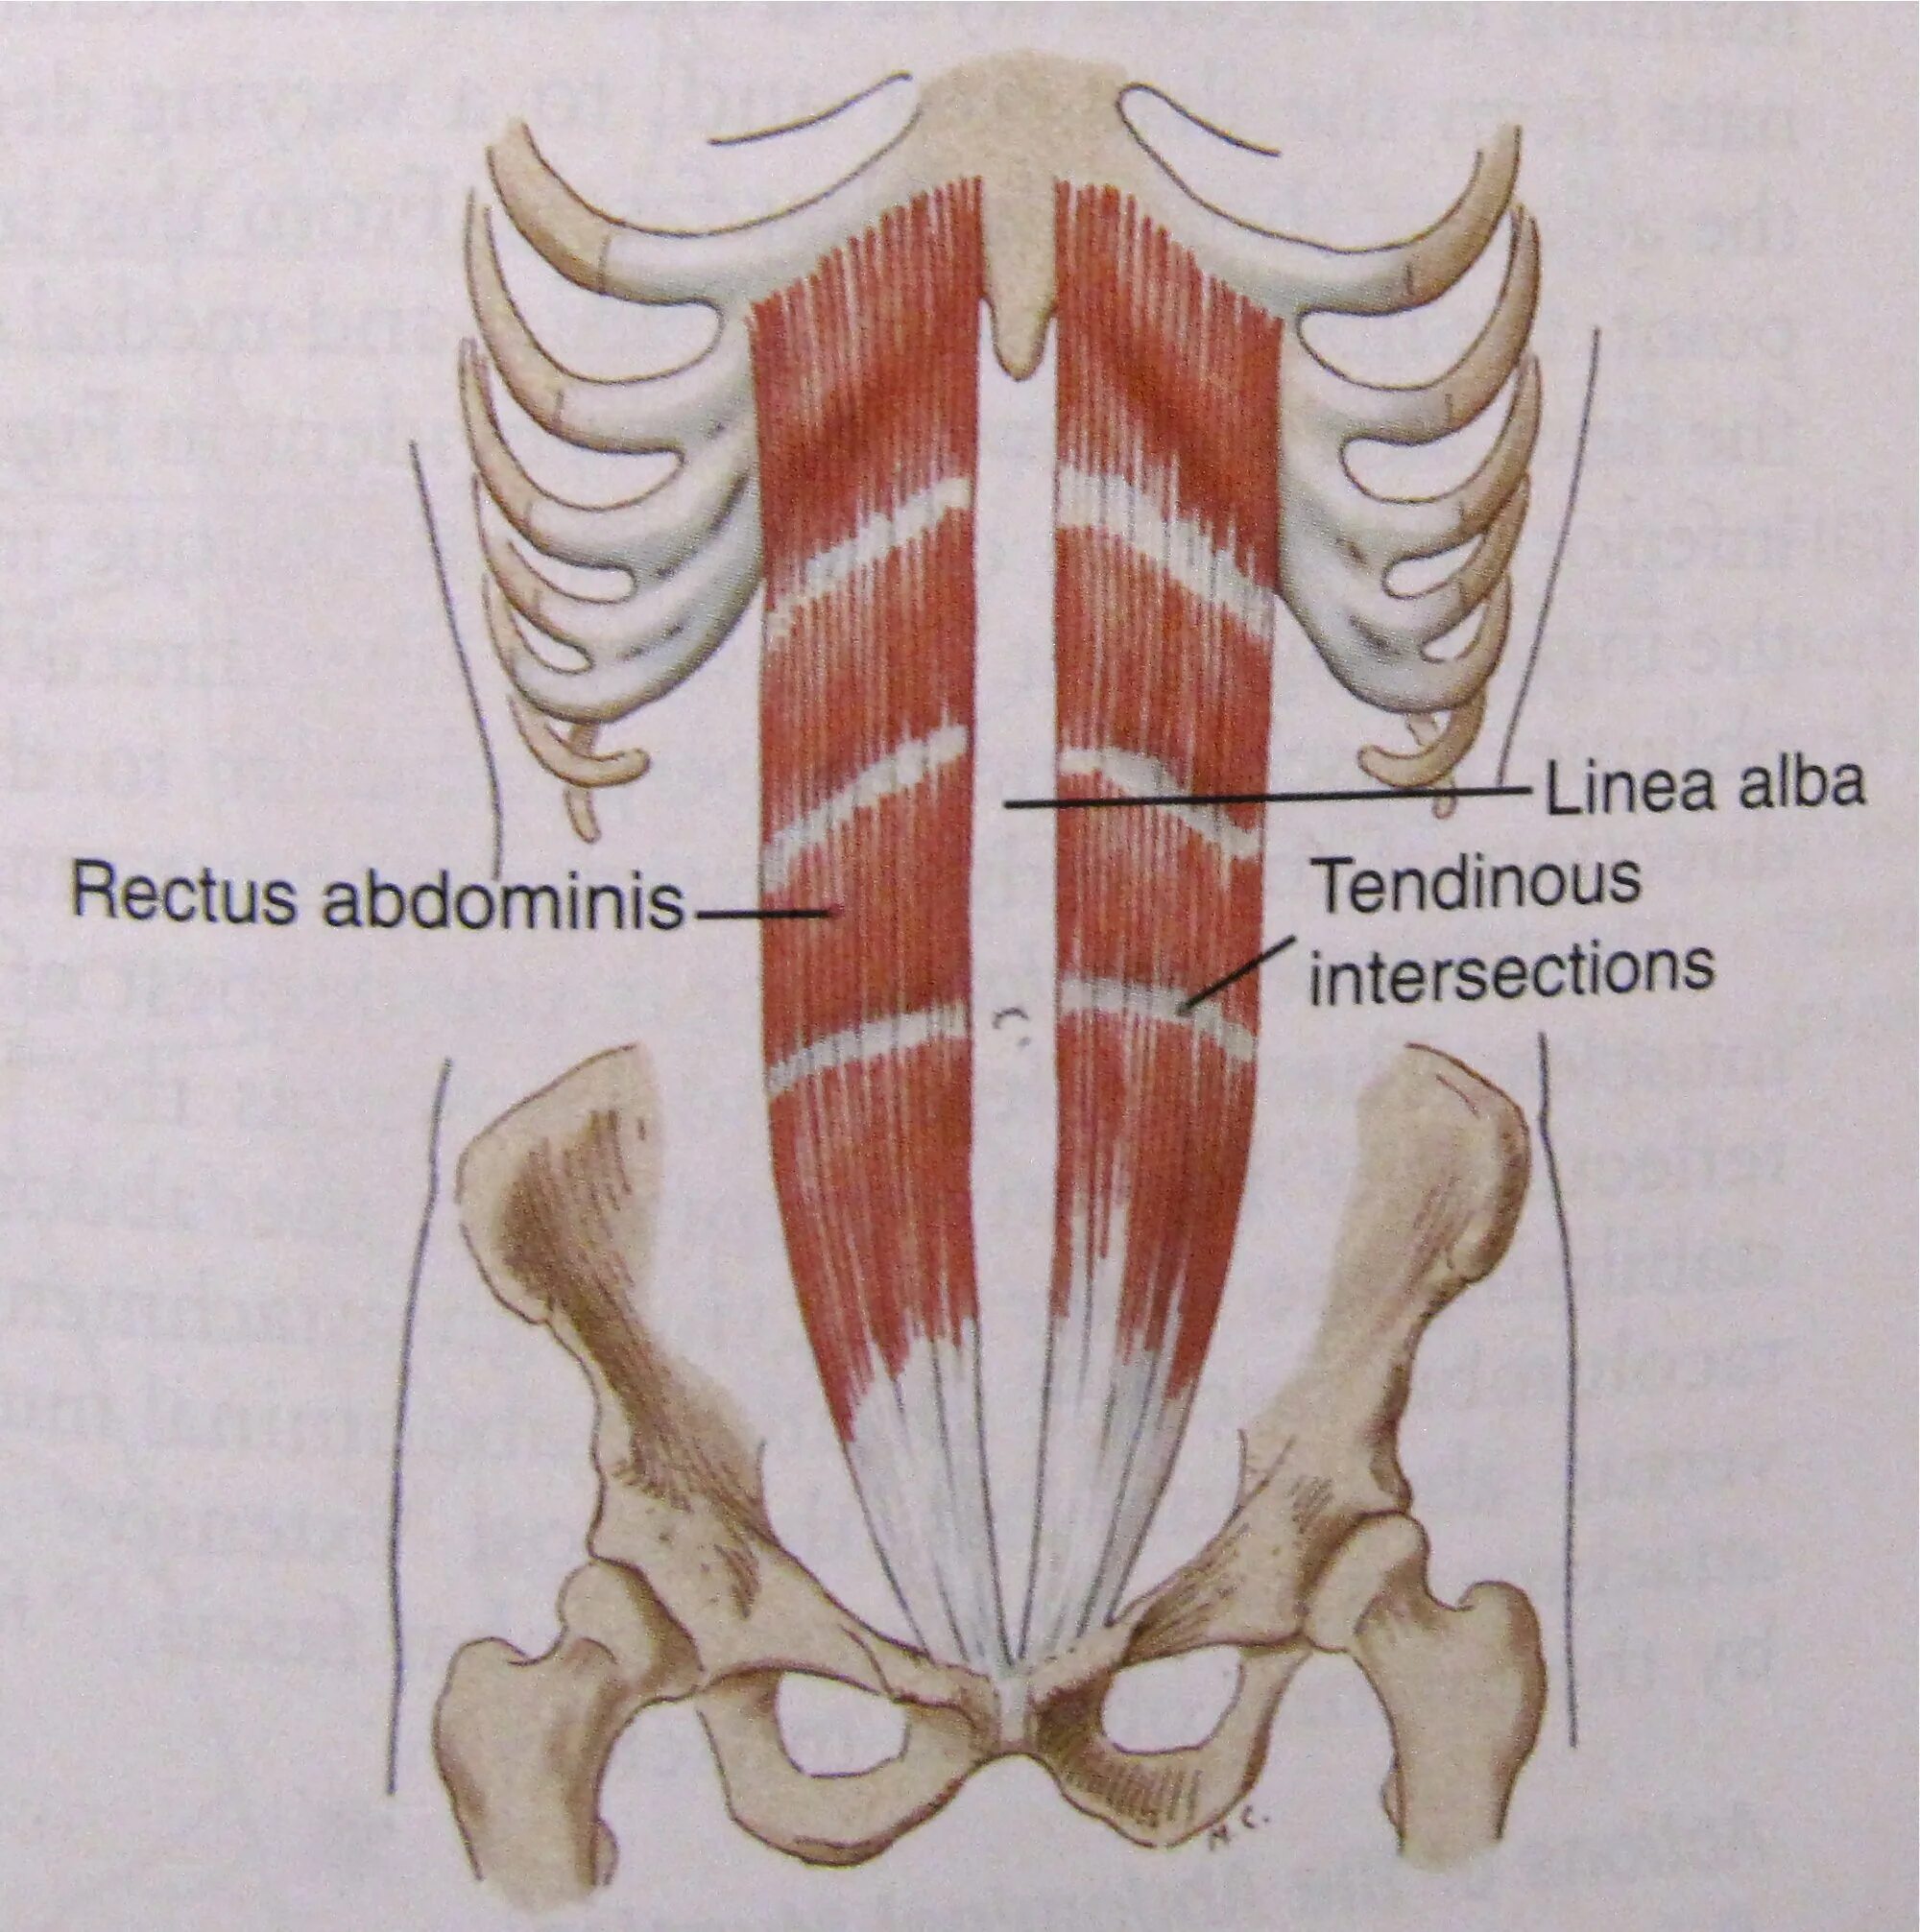 Rectus abdominis мышца. Transversus abdominis. Obliquus externus abdominis. Transversus abdominis мышца.